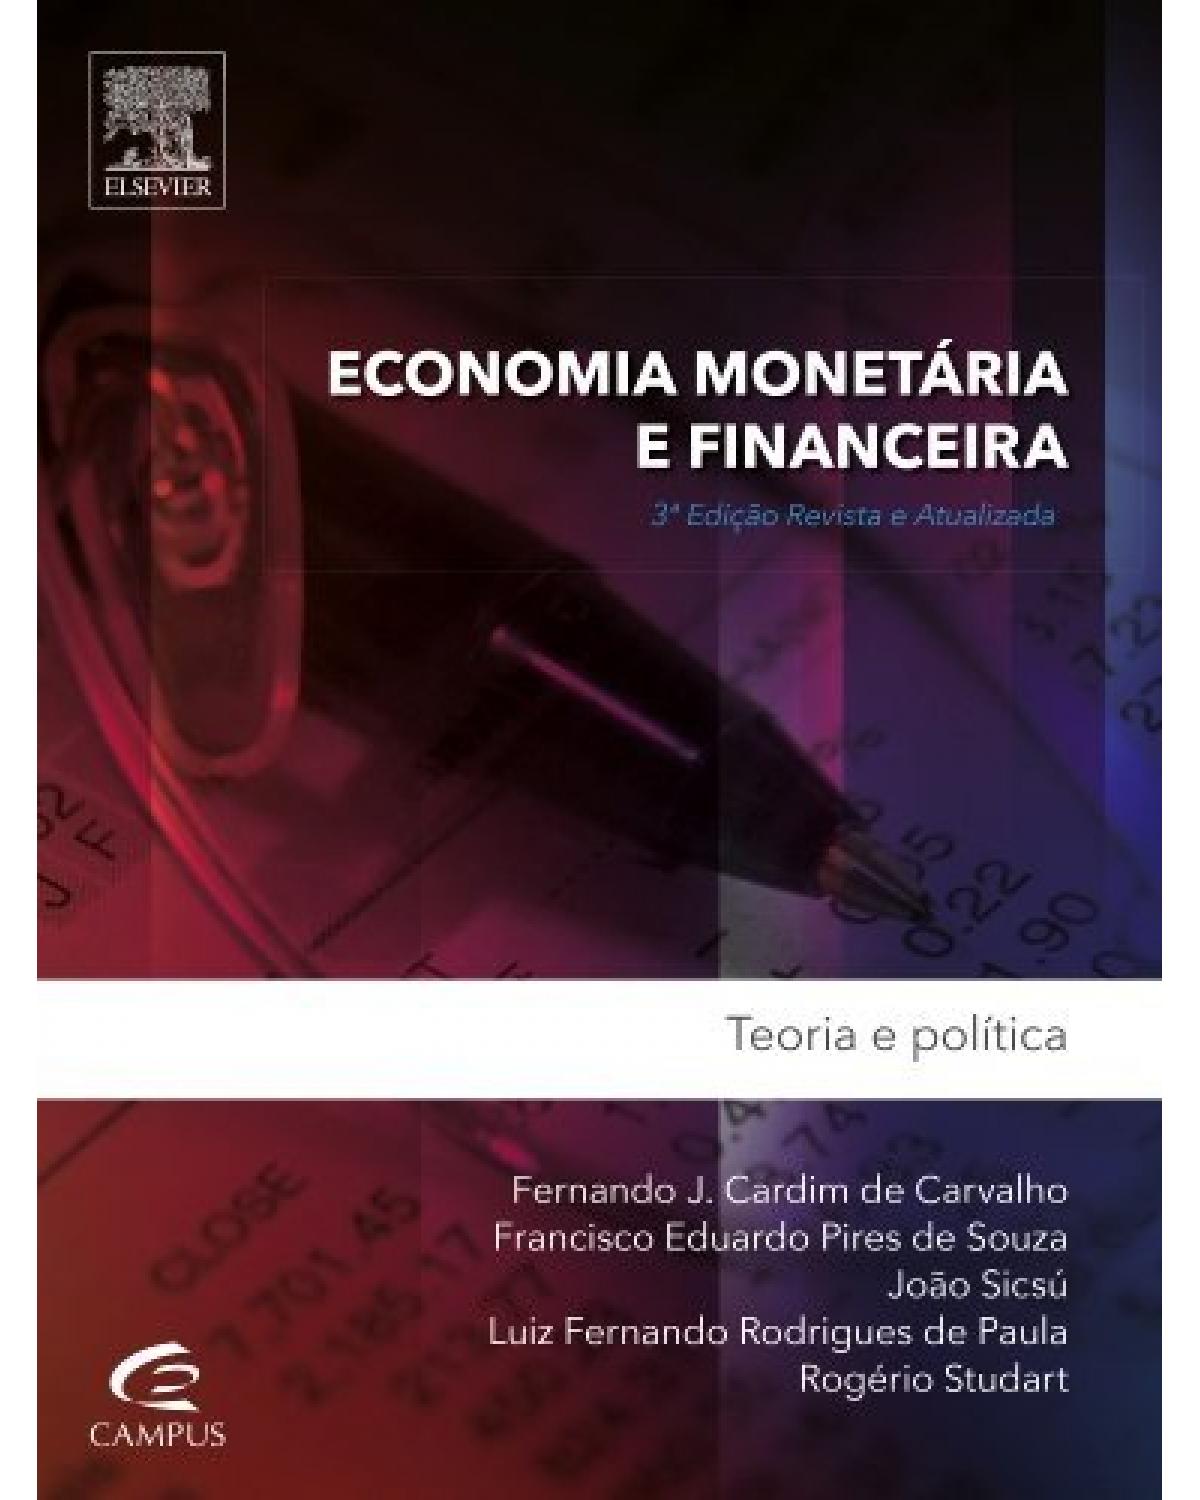 Economia monetária e financeira - teoria e prática - 3ª Edição | 2015